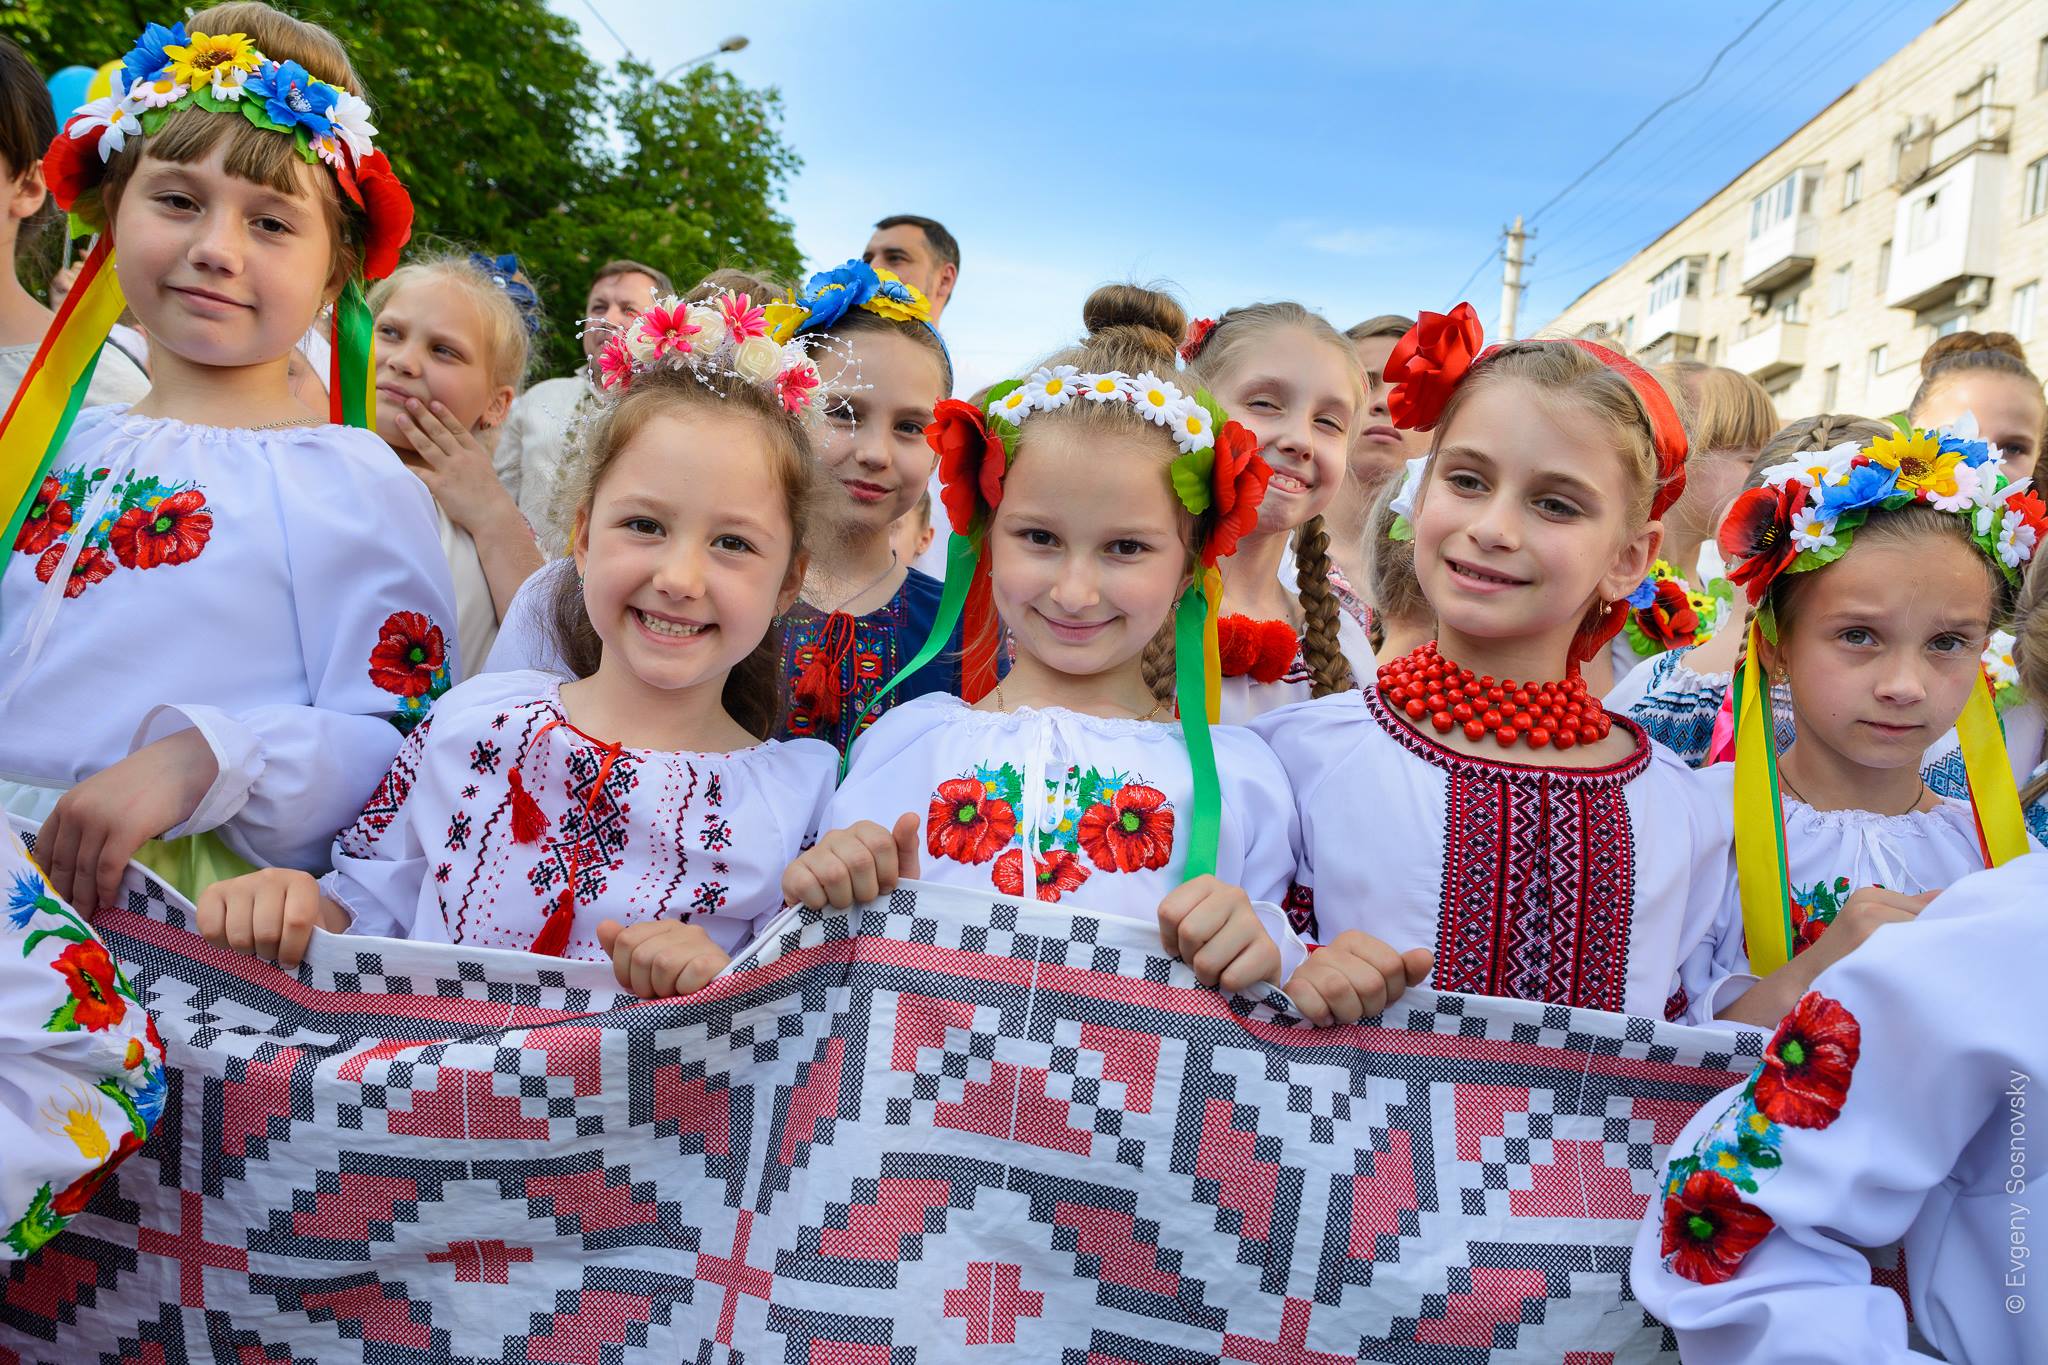 Vyshyvanka Day 2018 in Mariupol, Ukraine, photo 2